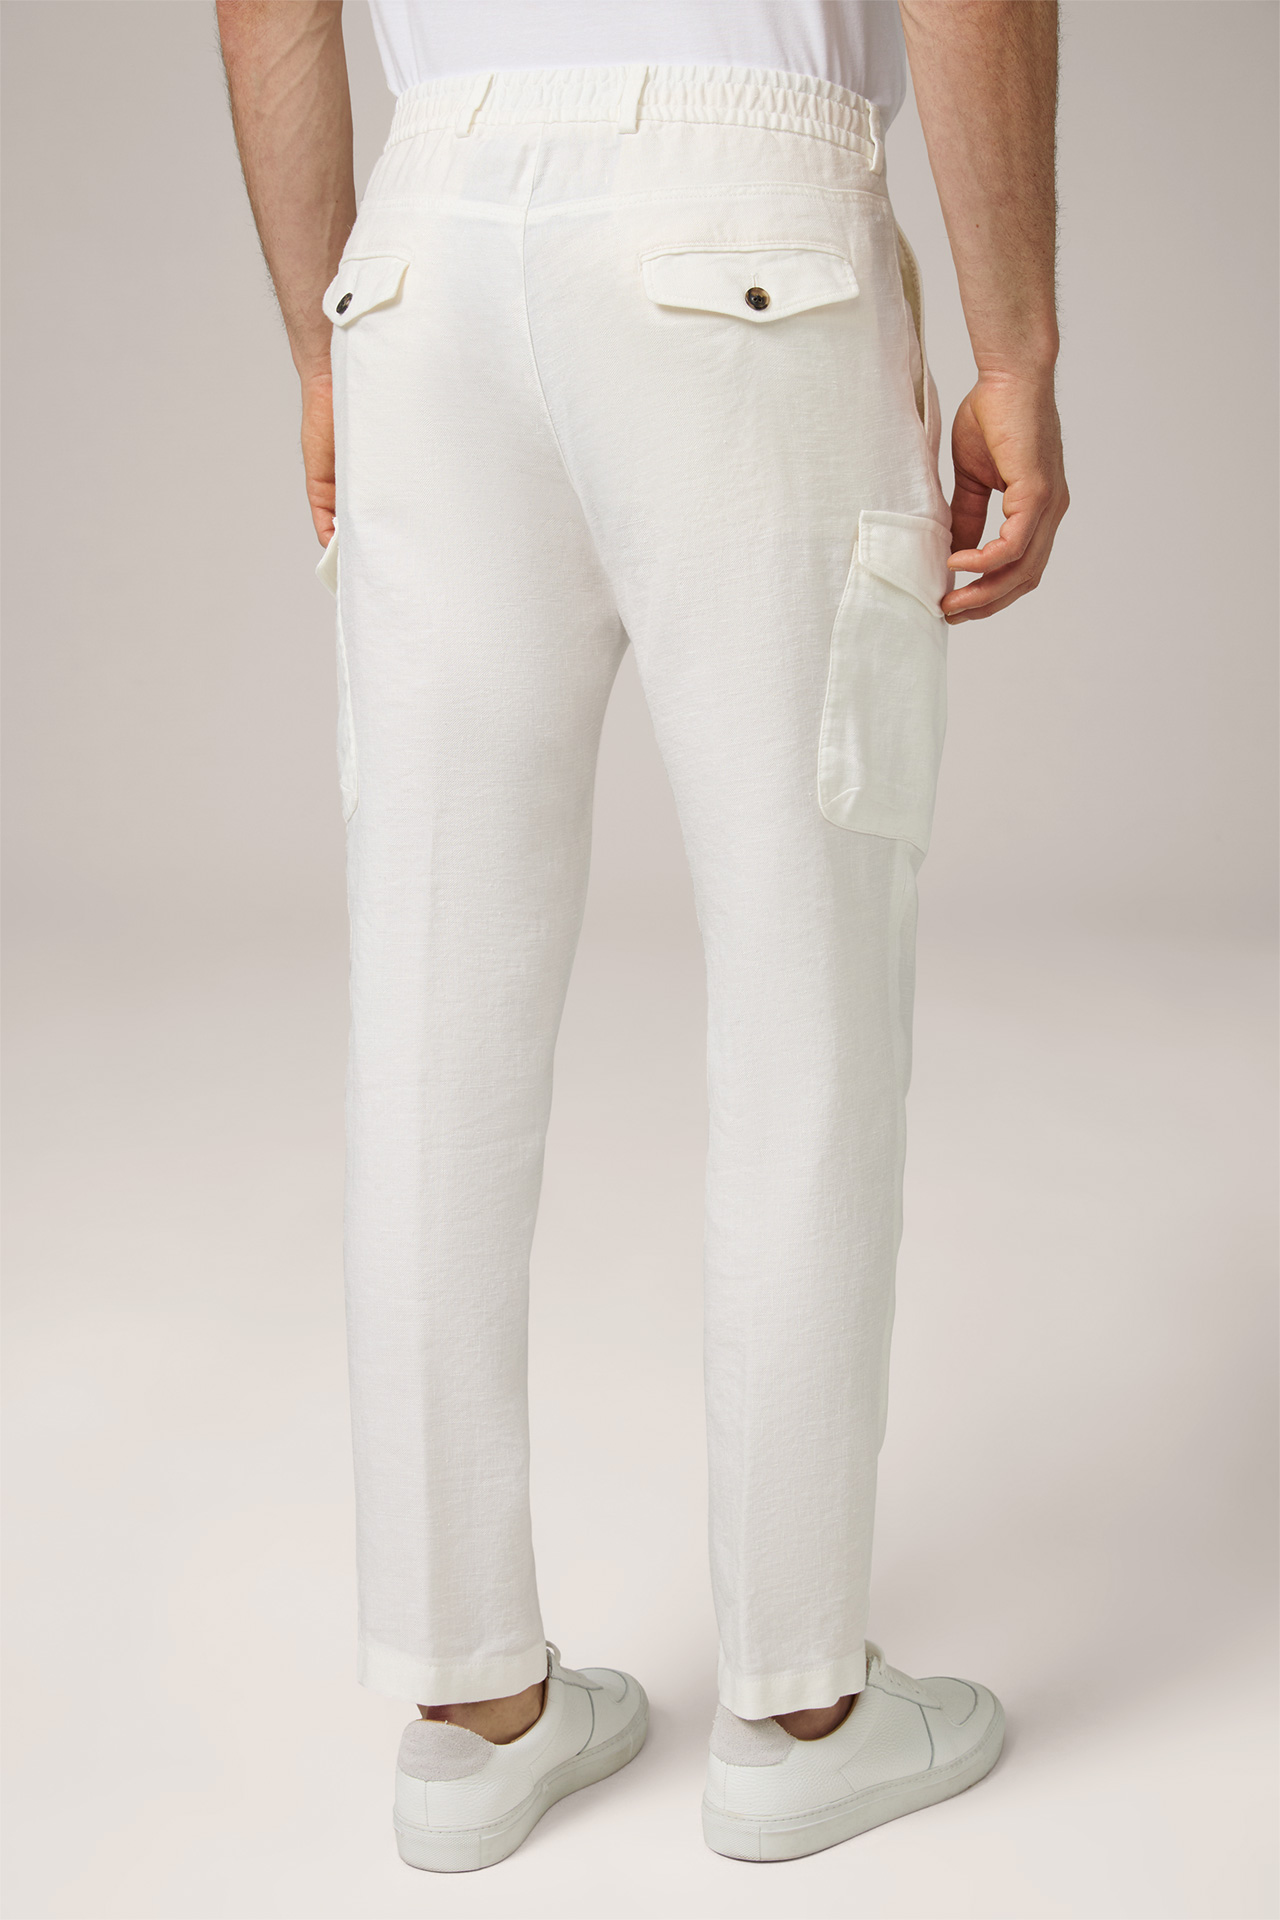 Pantalon cargo à pinces modulable Famo en lin mélangé, blanc laine